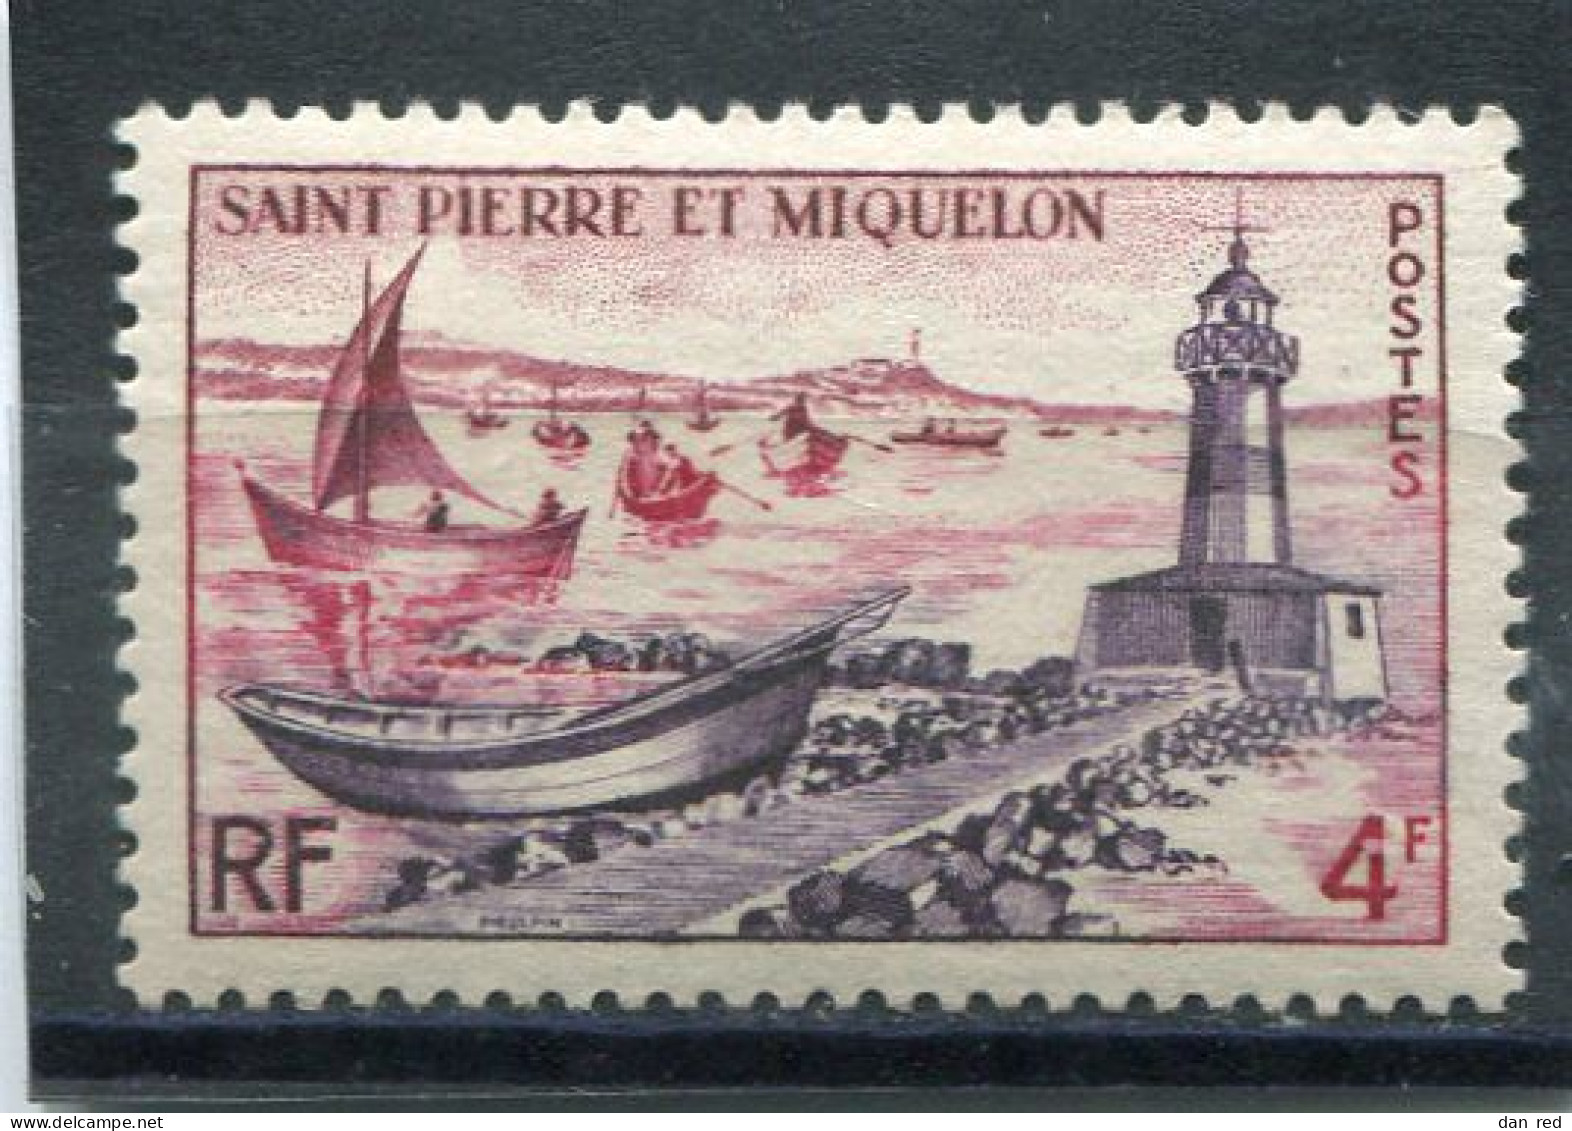 SAINT-PIERRE ET MIQUELON N° 356 ** (Y&T) (Neuf) - Unused Stamps